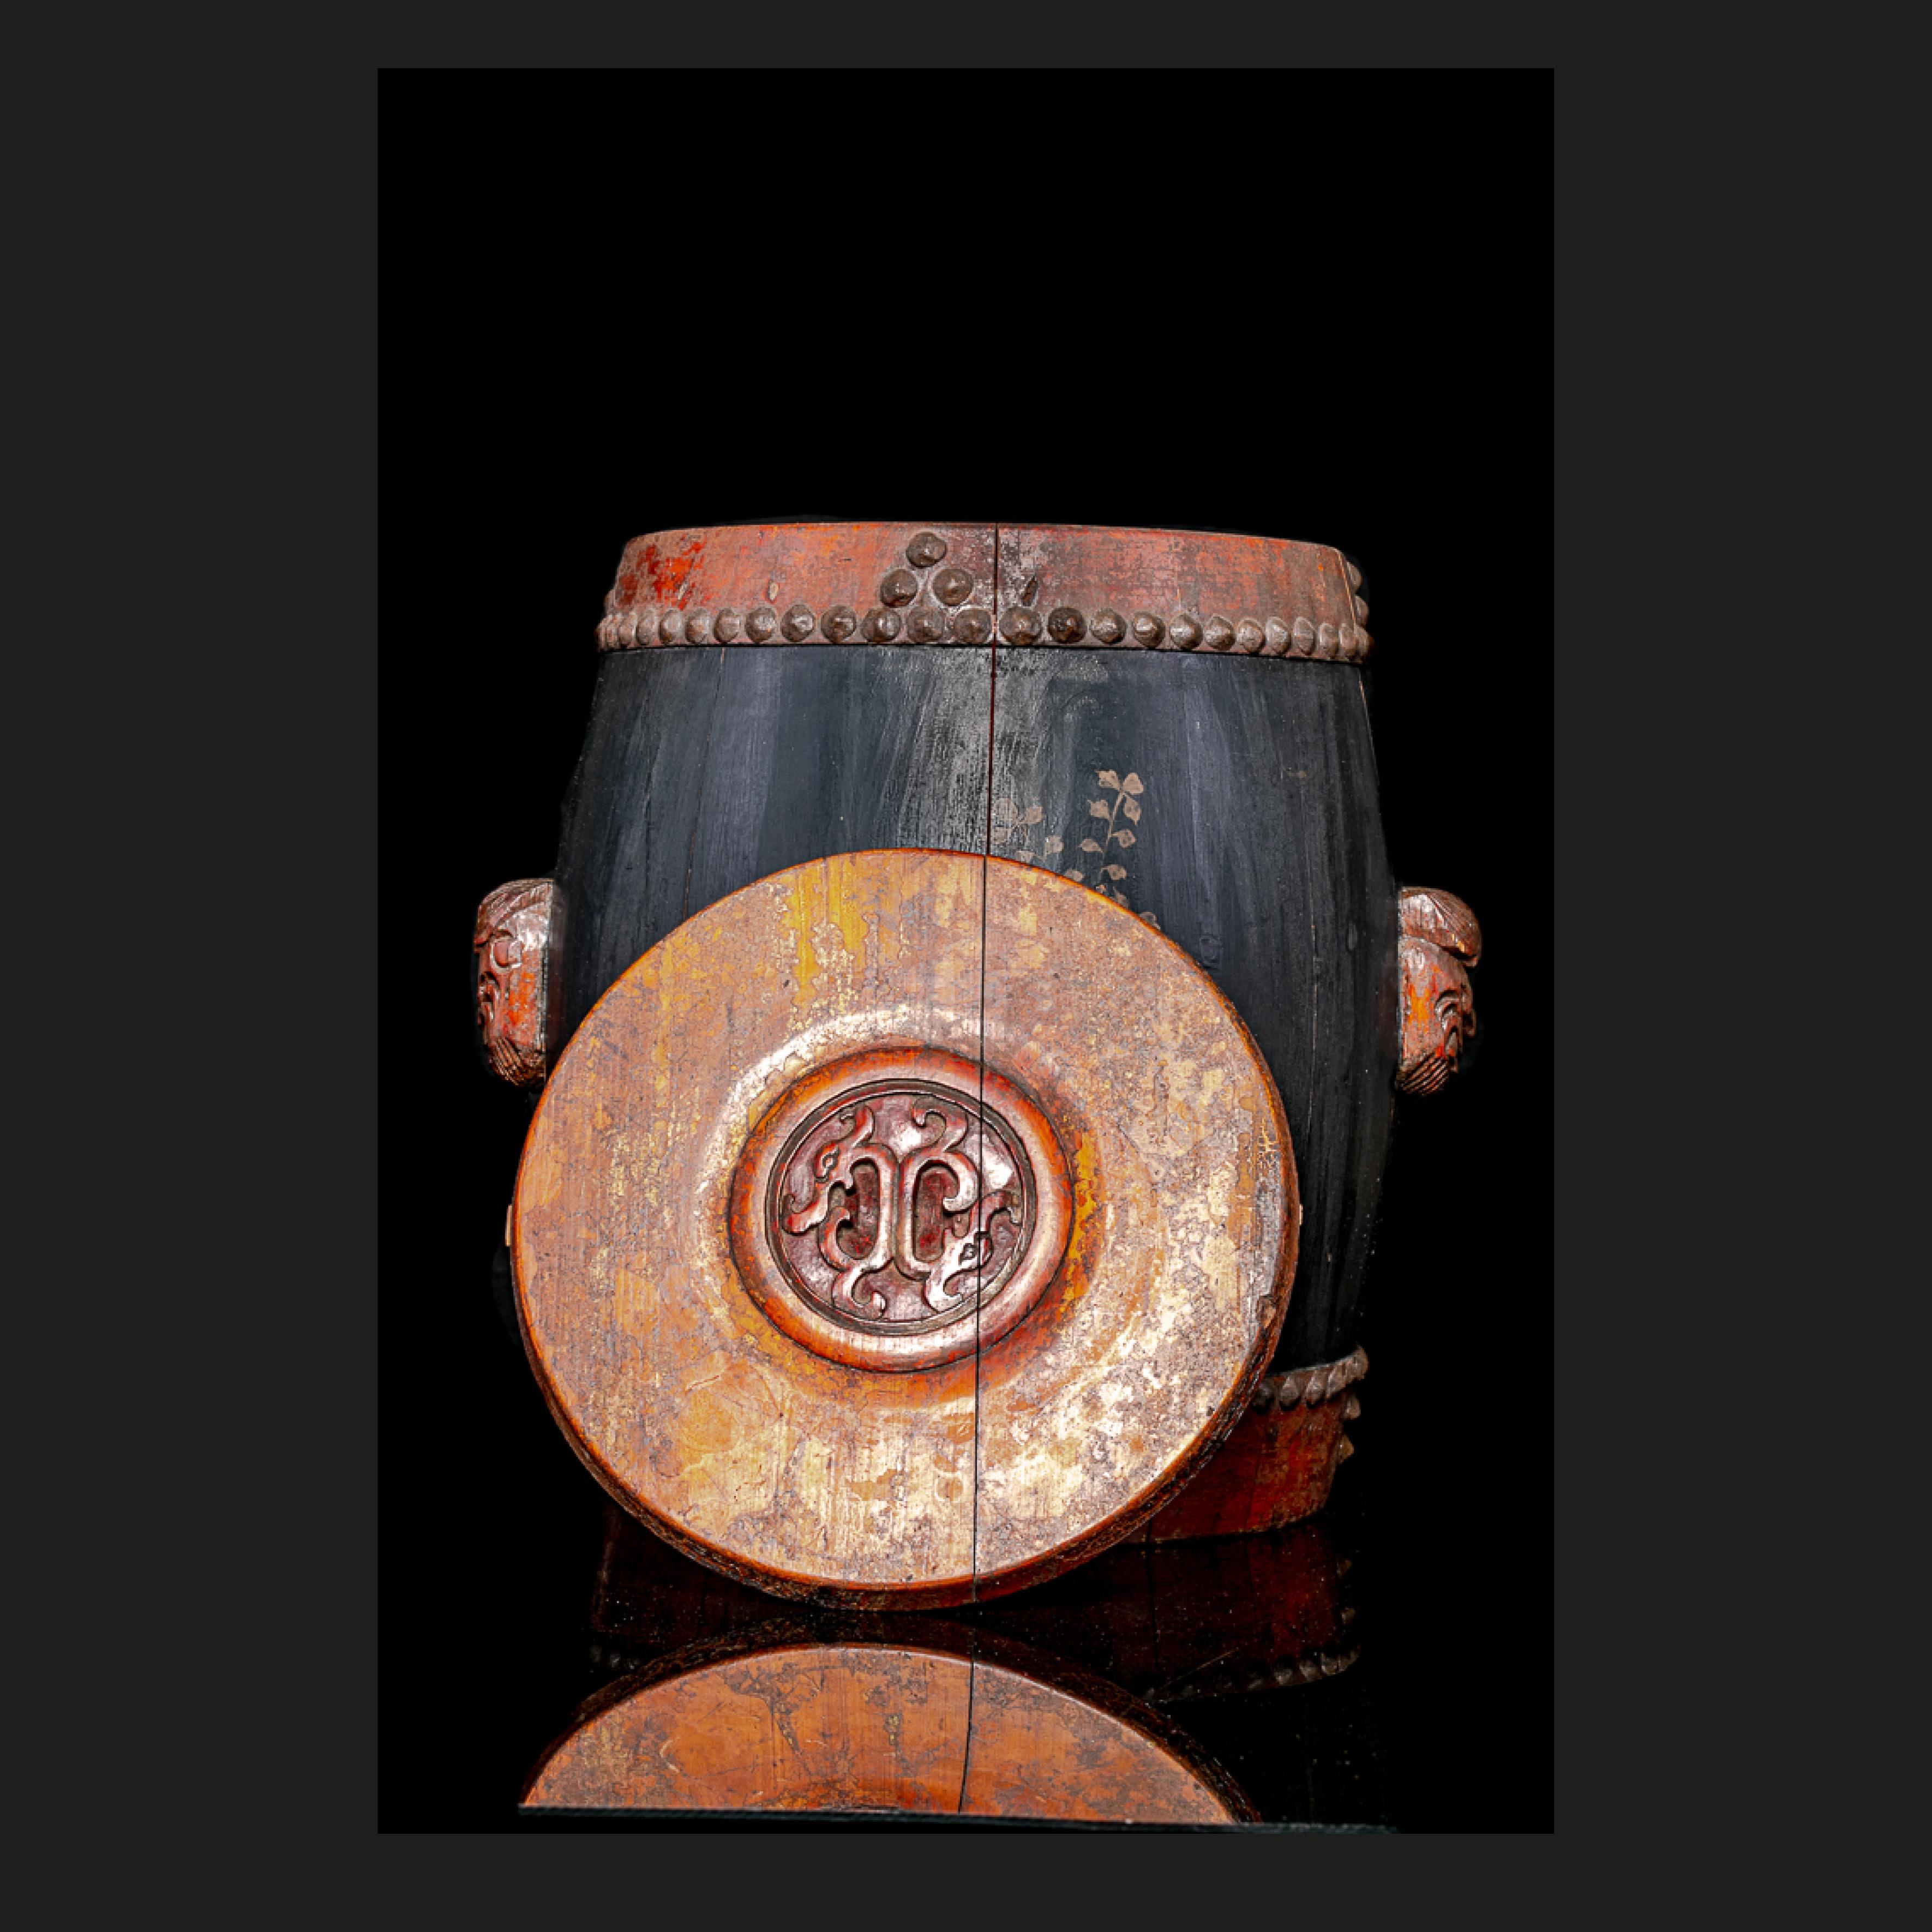 Belle boîte à riz chinoise en bois datant du 19e siècle avec des décorations peintes à la main. Une trouvaille rare remplie d'histoire !